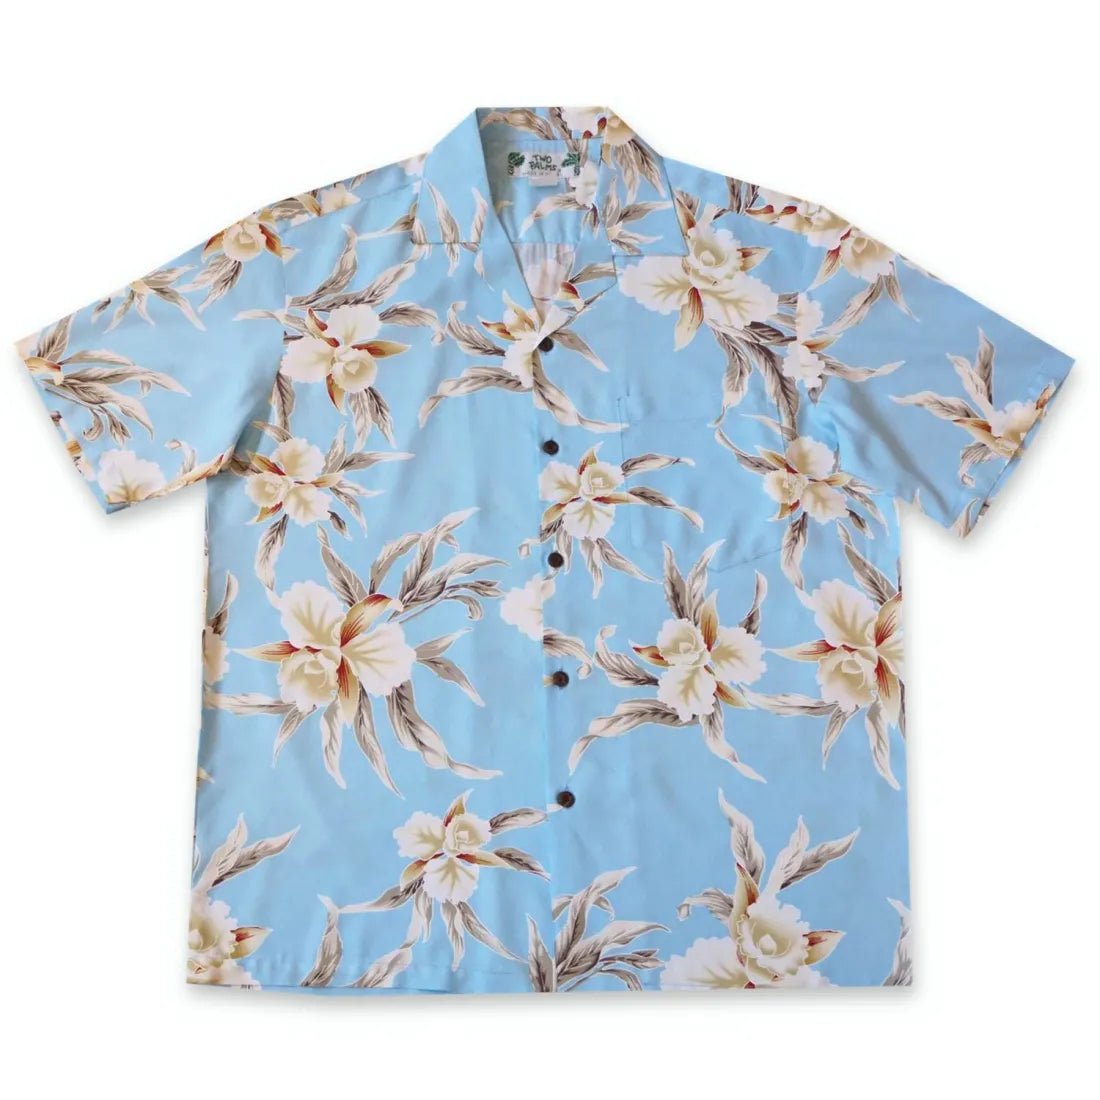 Mele Blue Hawaiian Rayon Shirt - Made In Hawaii